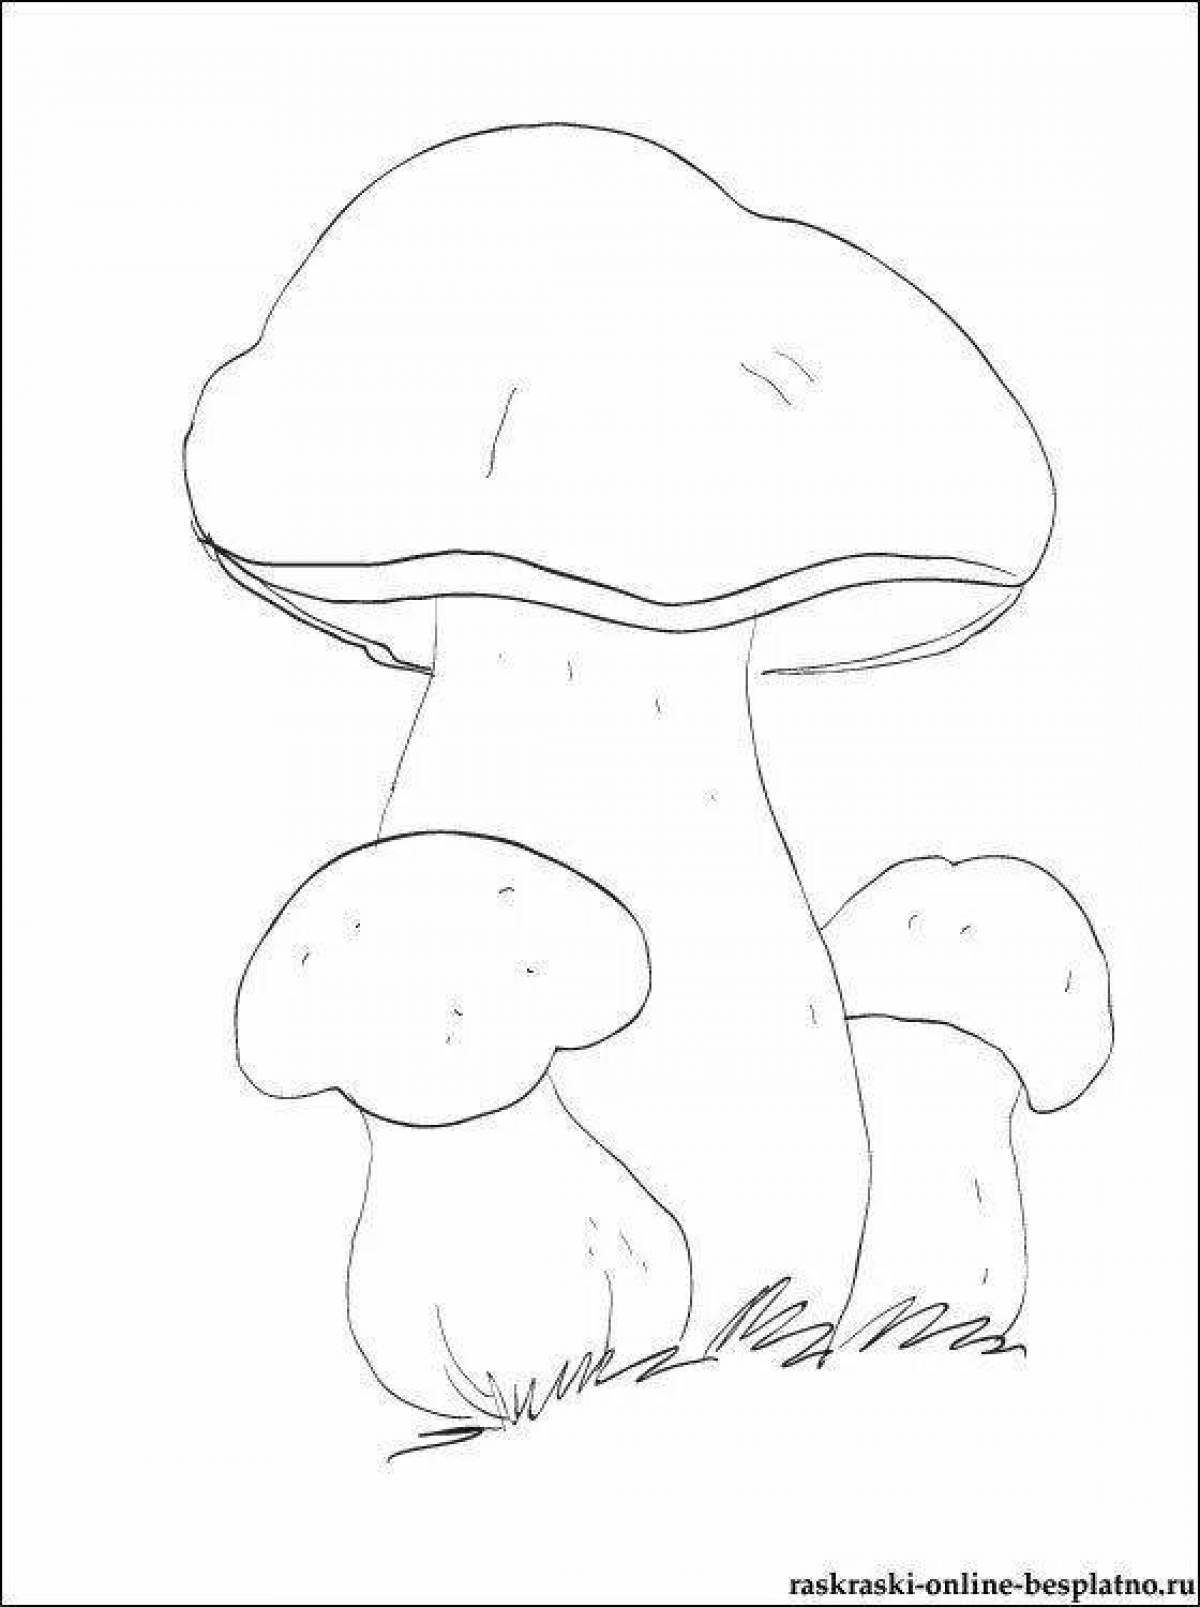 Раскраска экзотический гриб боровик